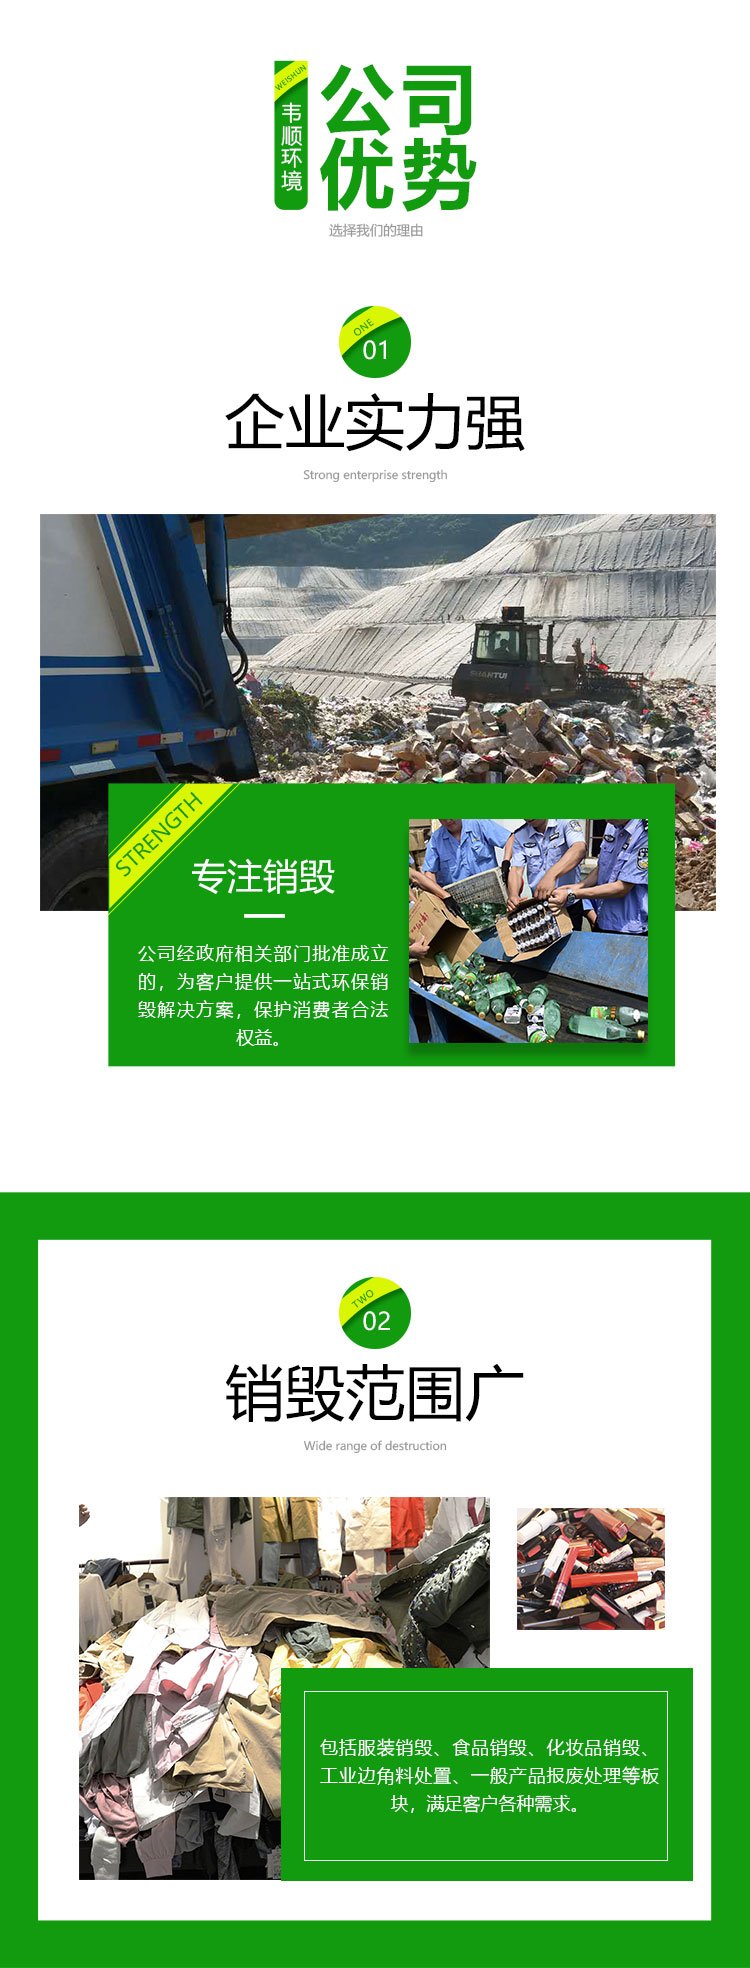 广州黄埔区报废书本销毁厂家提供现场处理服务